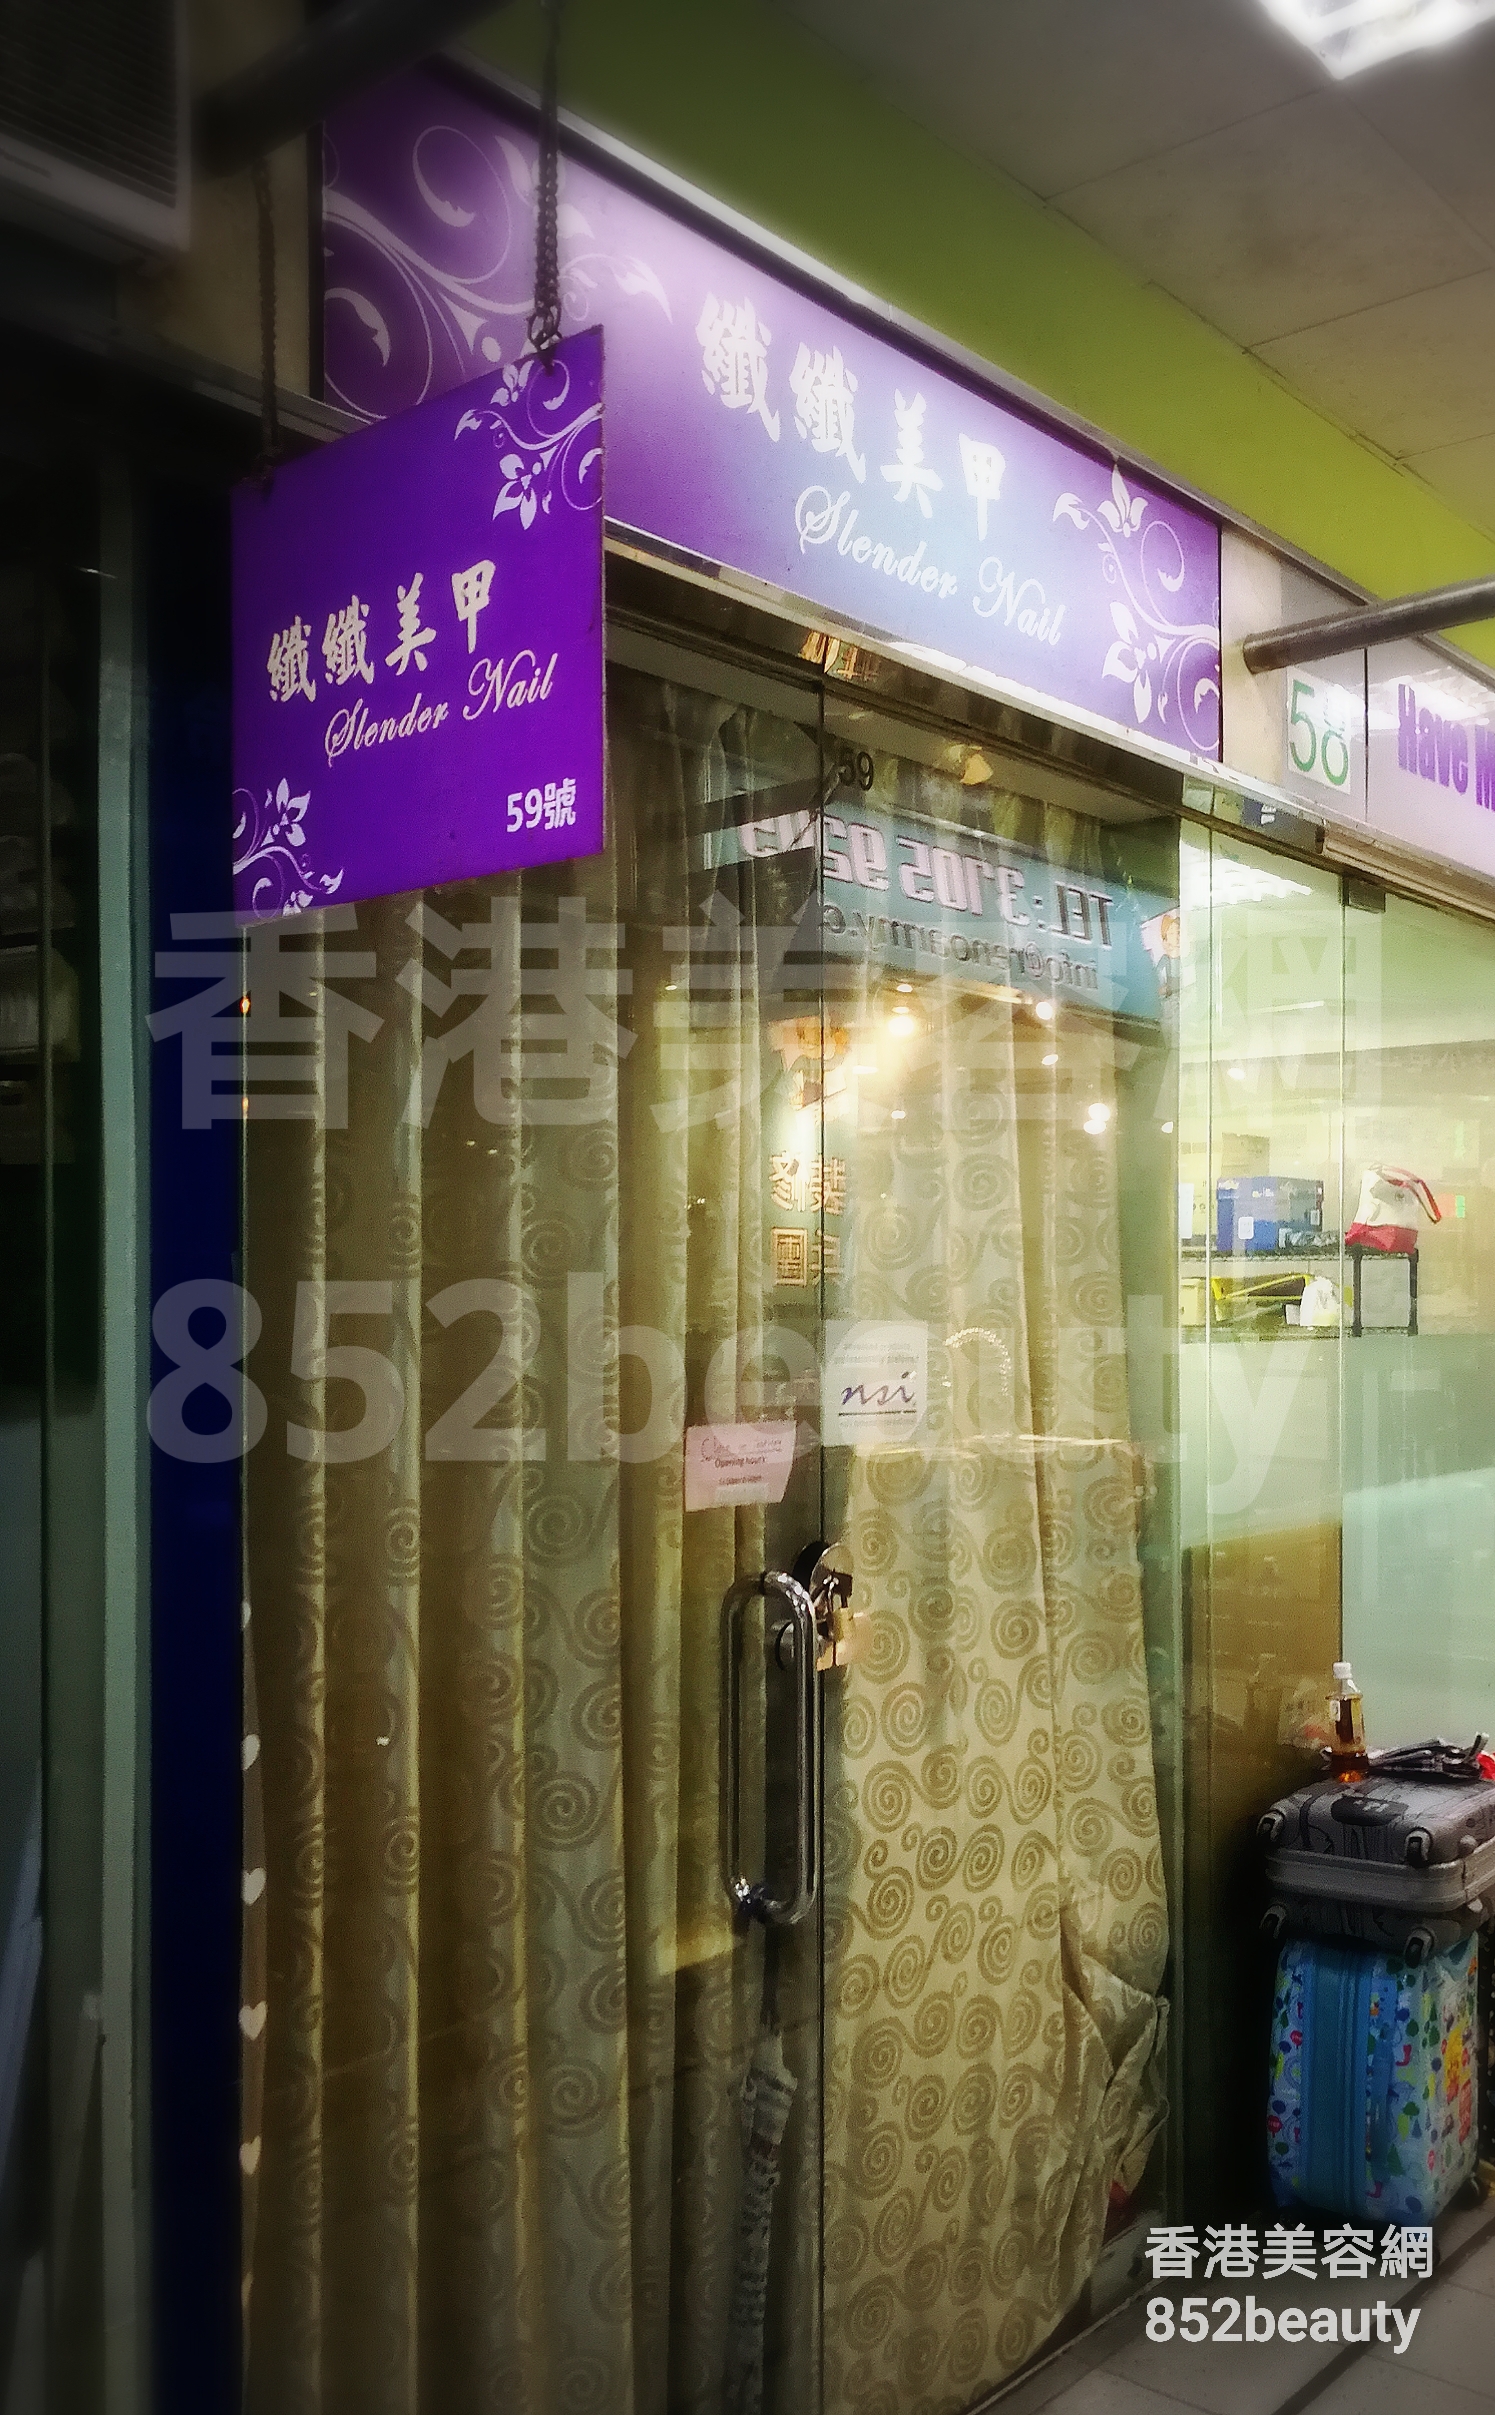 香港美容網 Hong Kong Beauty Salon 美容院 / 美容師: 纖纖美甲